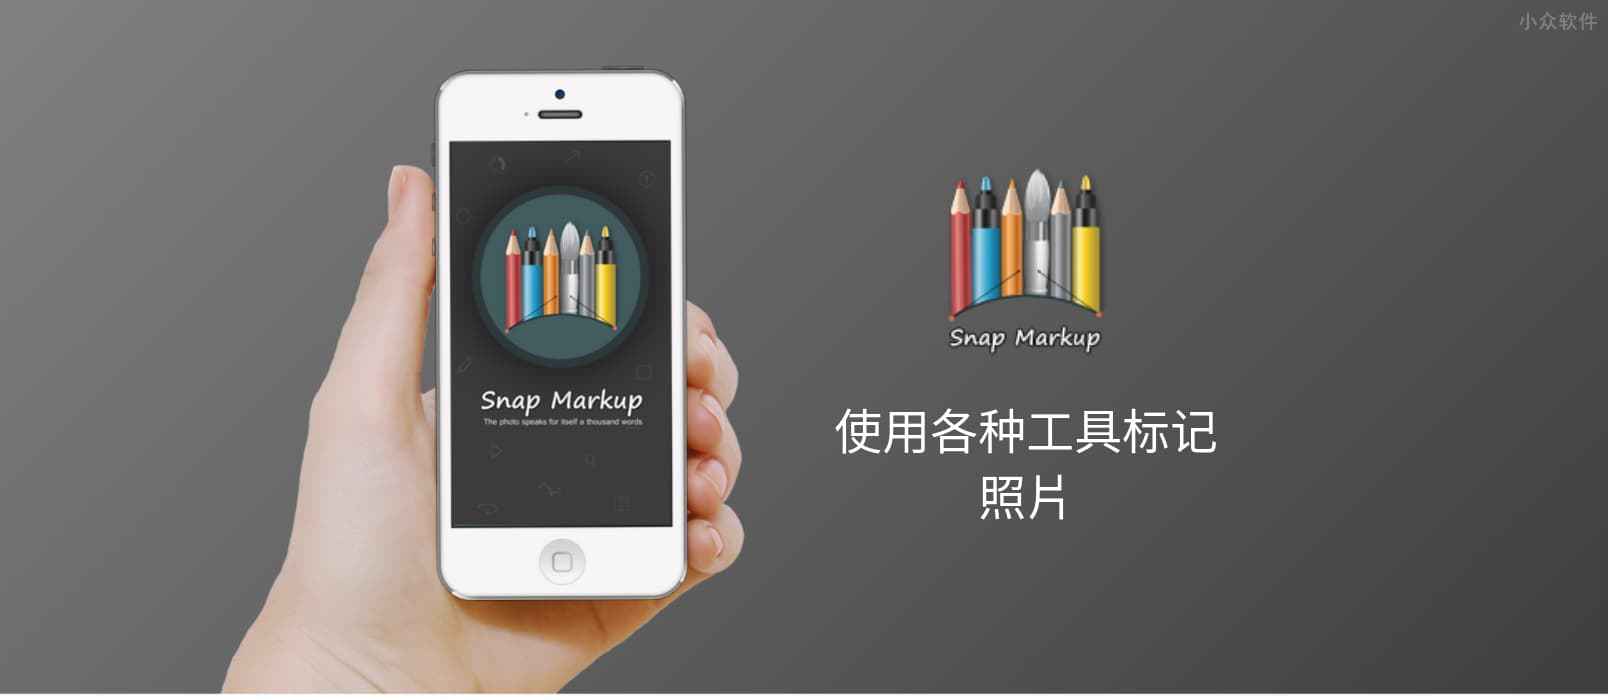 Snap Markup - 简单的图片标记应用[iOS 限免] 1